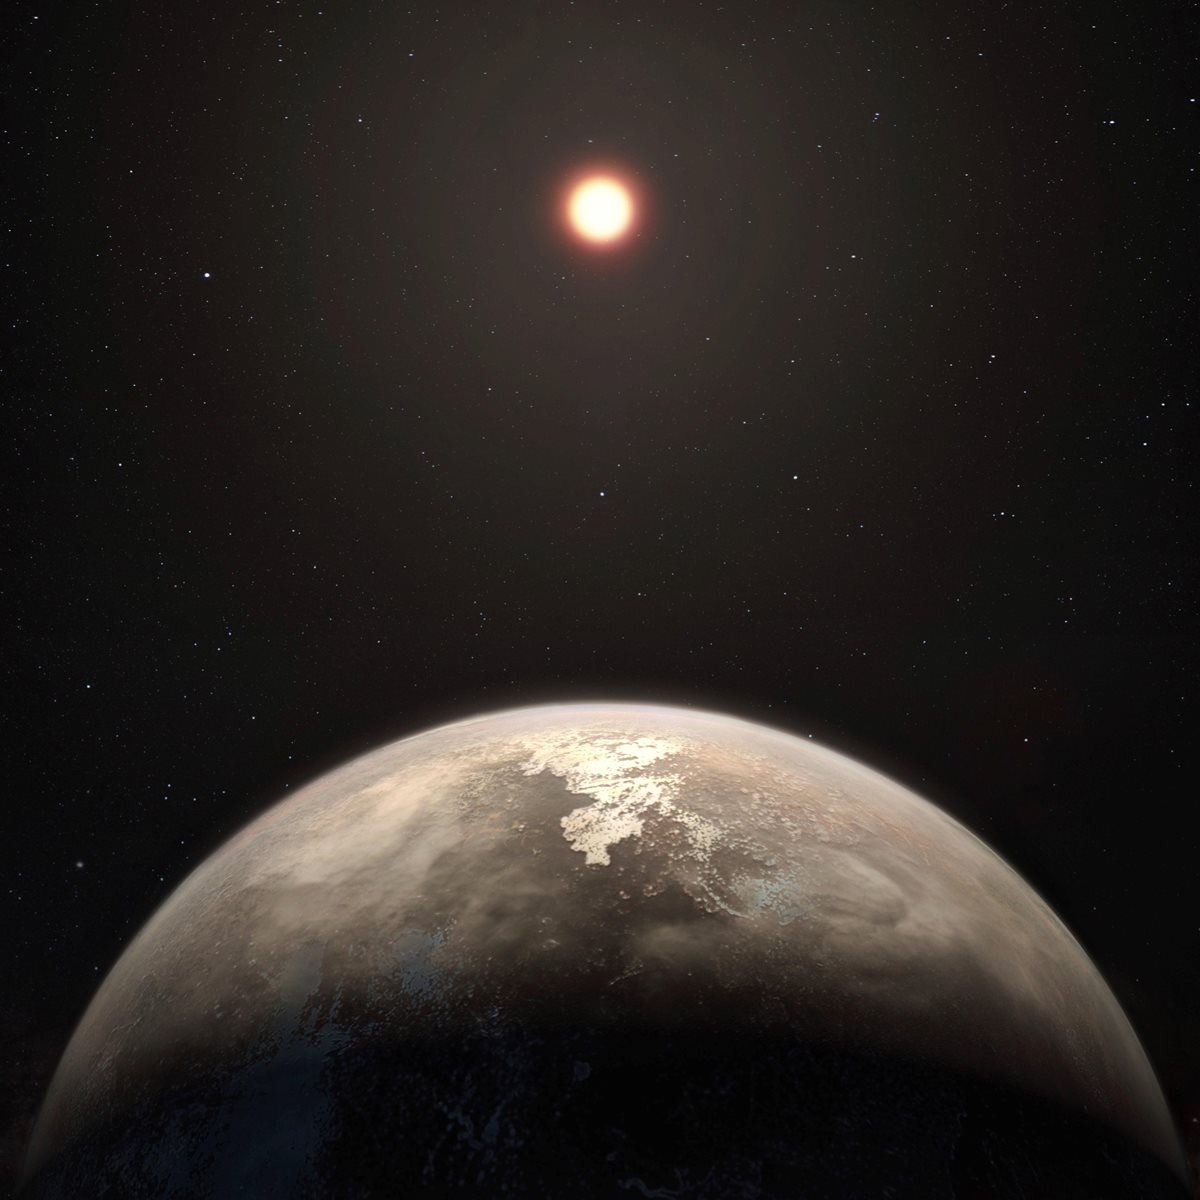 Imagen artística del planeta templado Ross 128b con su estrella enana roja anfitriona al fondo. (Foto Prensa Libre: EFE)